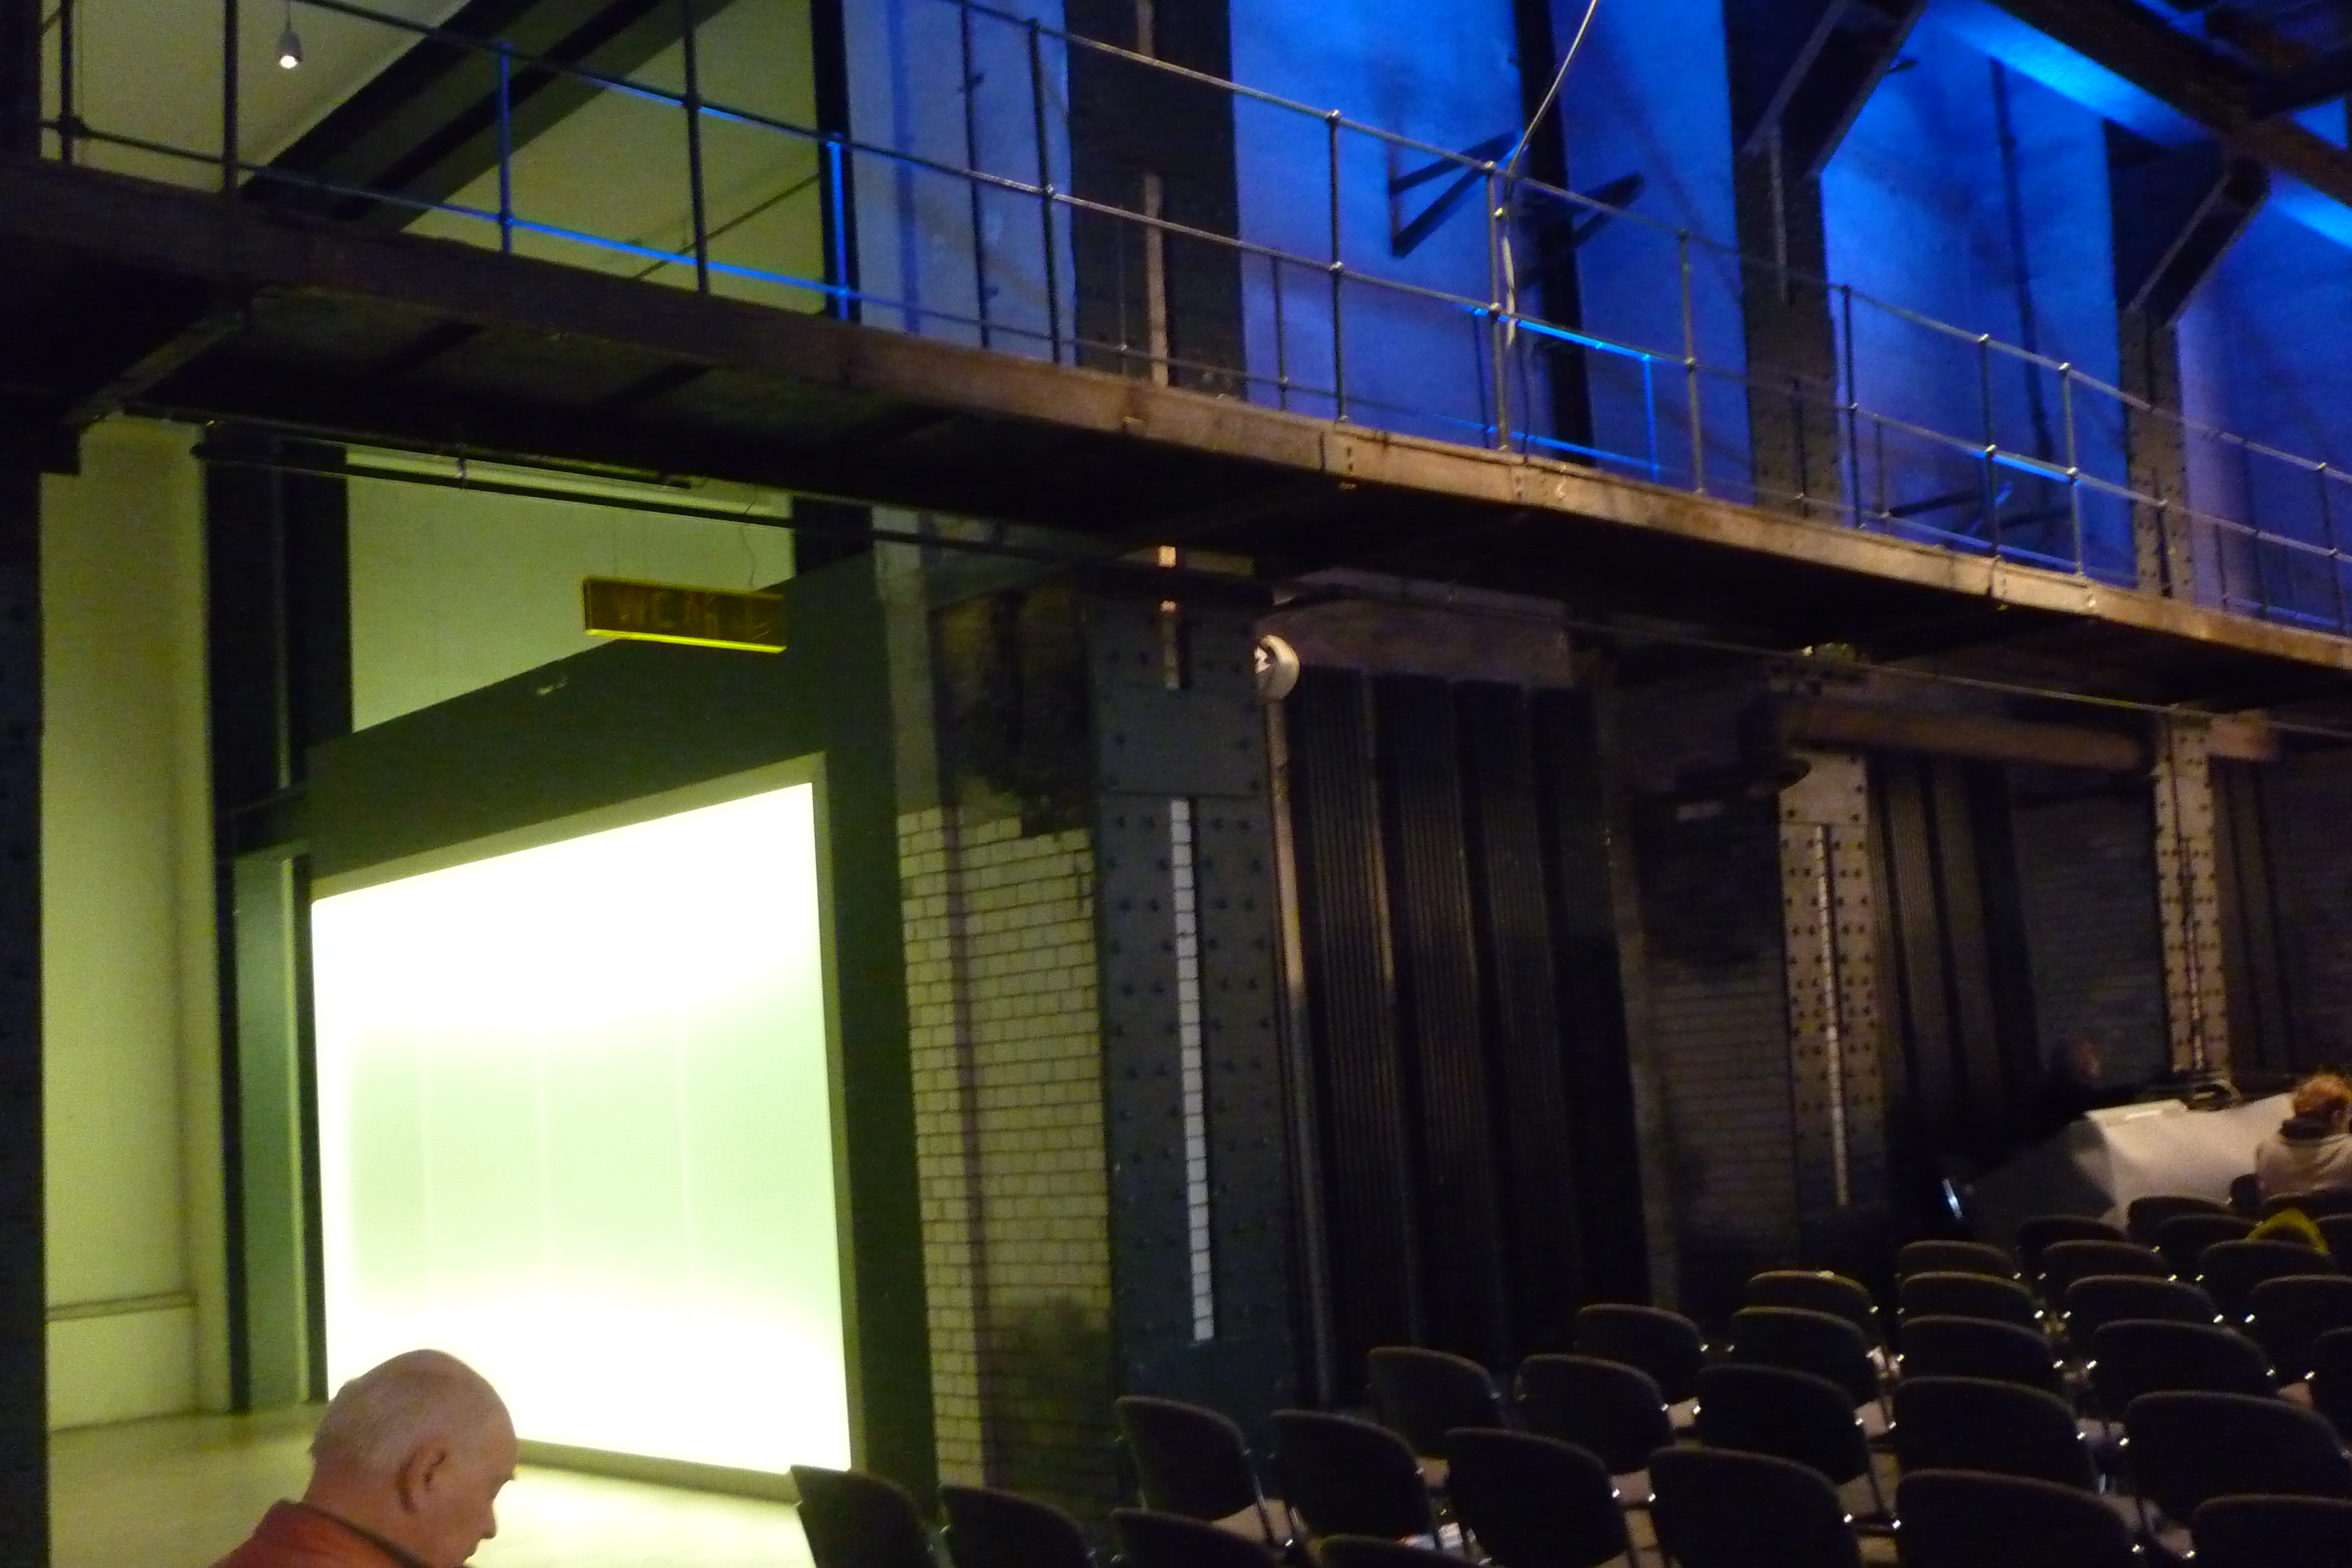 E -Werk, plenáris ülés csarnoka, kivilágított üvegfal mögött mosdó